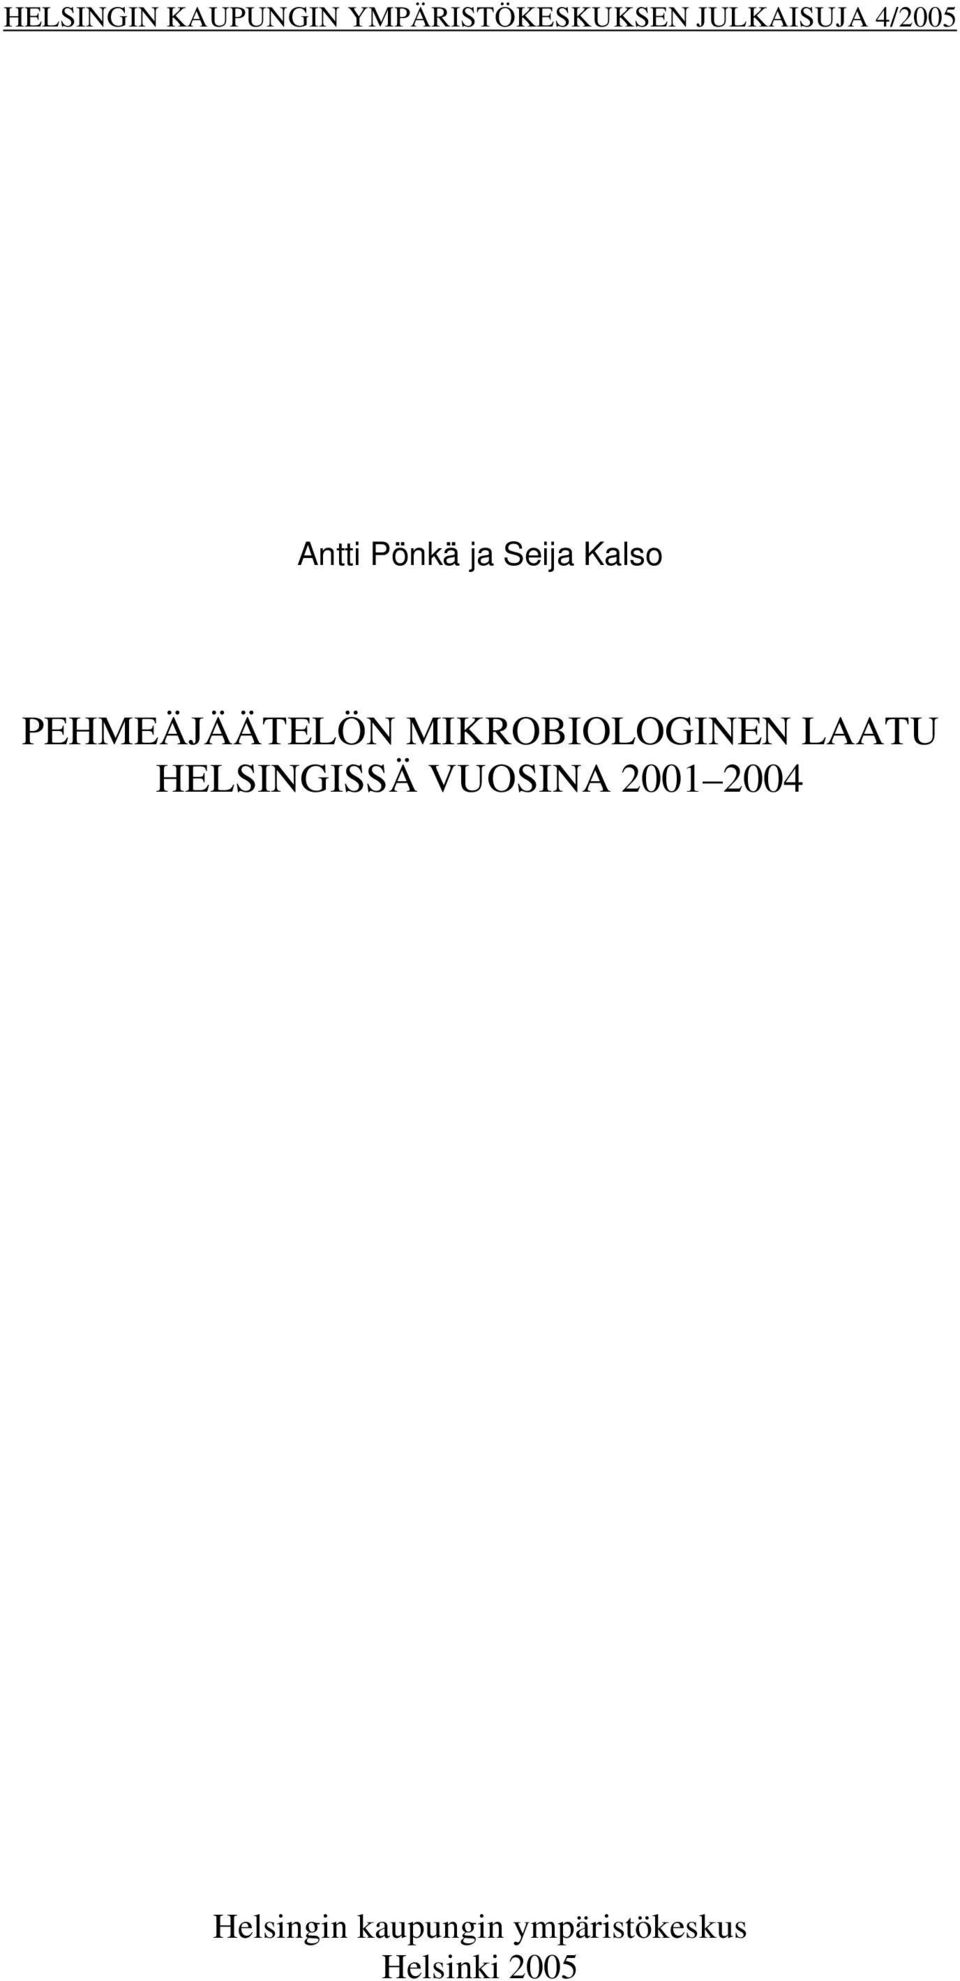 MIKROBIOLOGINEN LAATU HELSINGISSÄ VUOSINA 2001